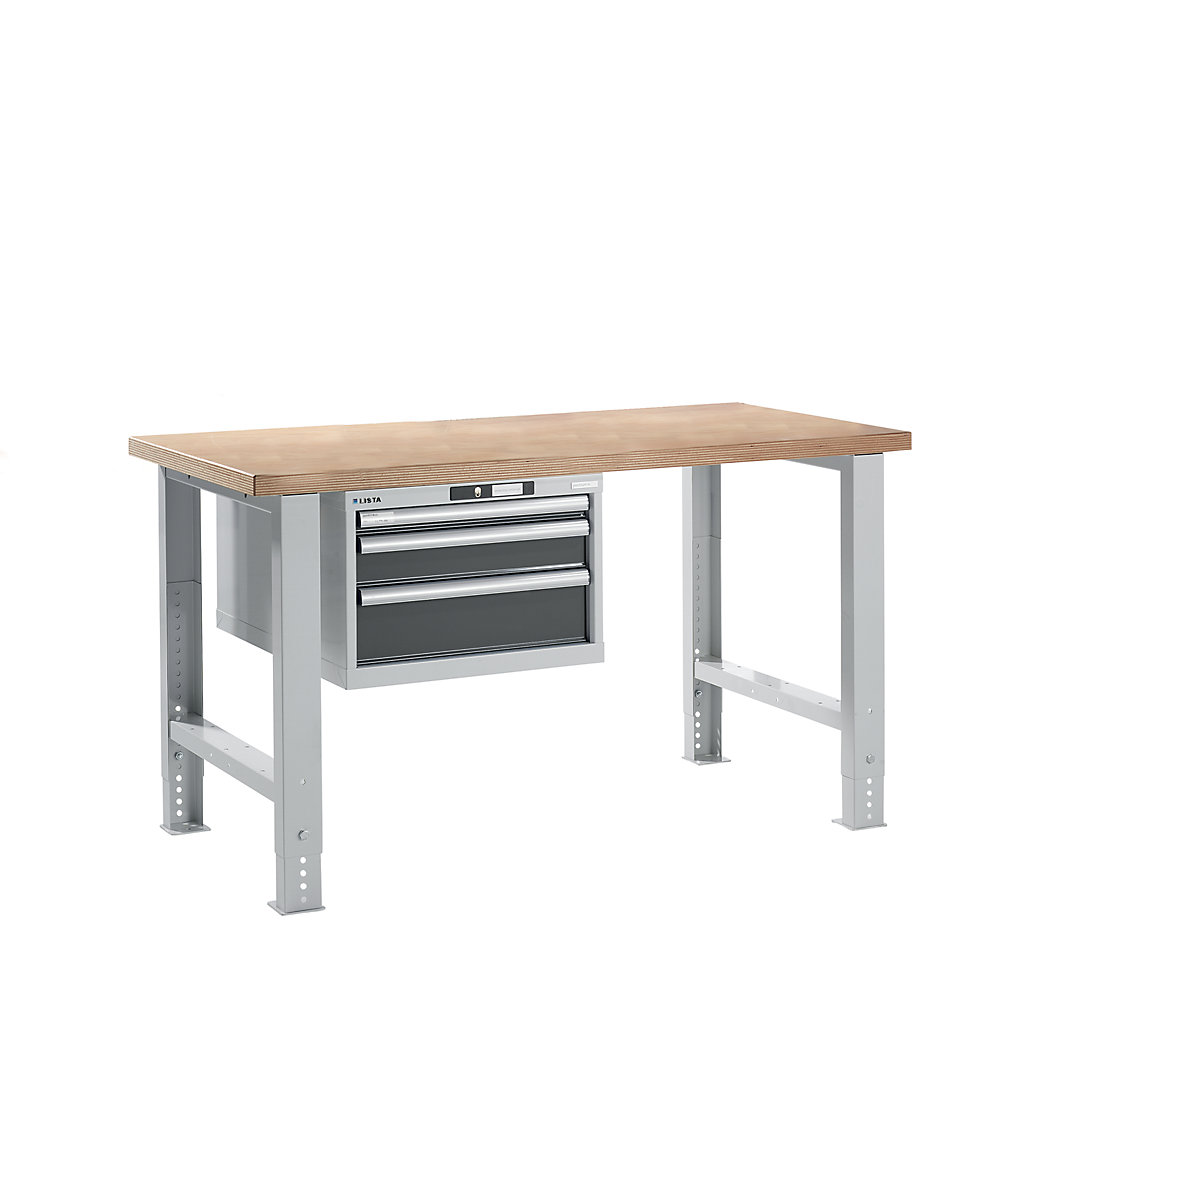 Dílenský stůl ve stavebnicovém systému – LISTA, výška 740 – 1090 mm, závěsná skříň, 3 zásuvky, šedá metalíza, šířka stolu 1500 mm-16